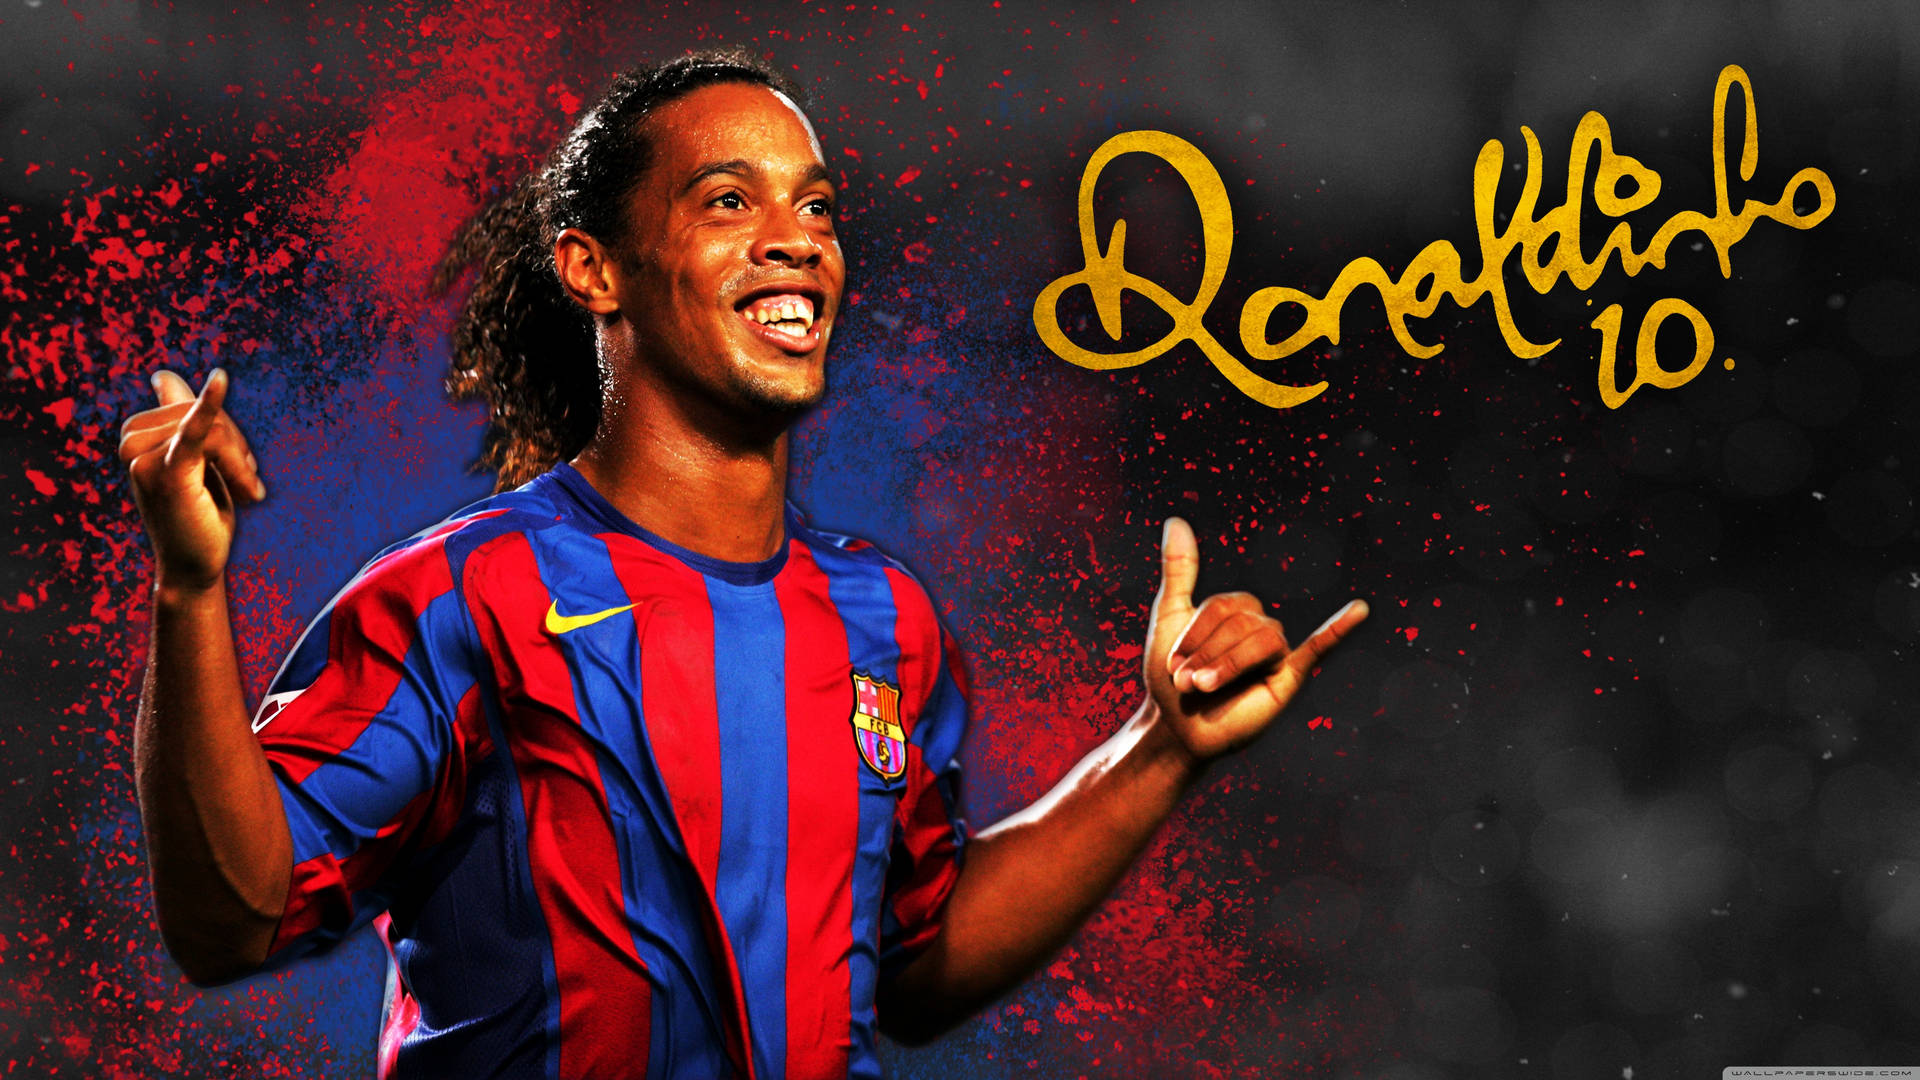 Nummer10 Ronaldinho. Wallpaper